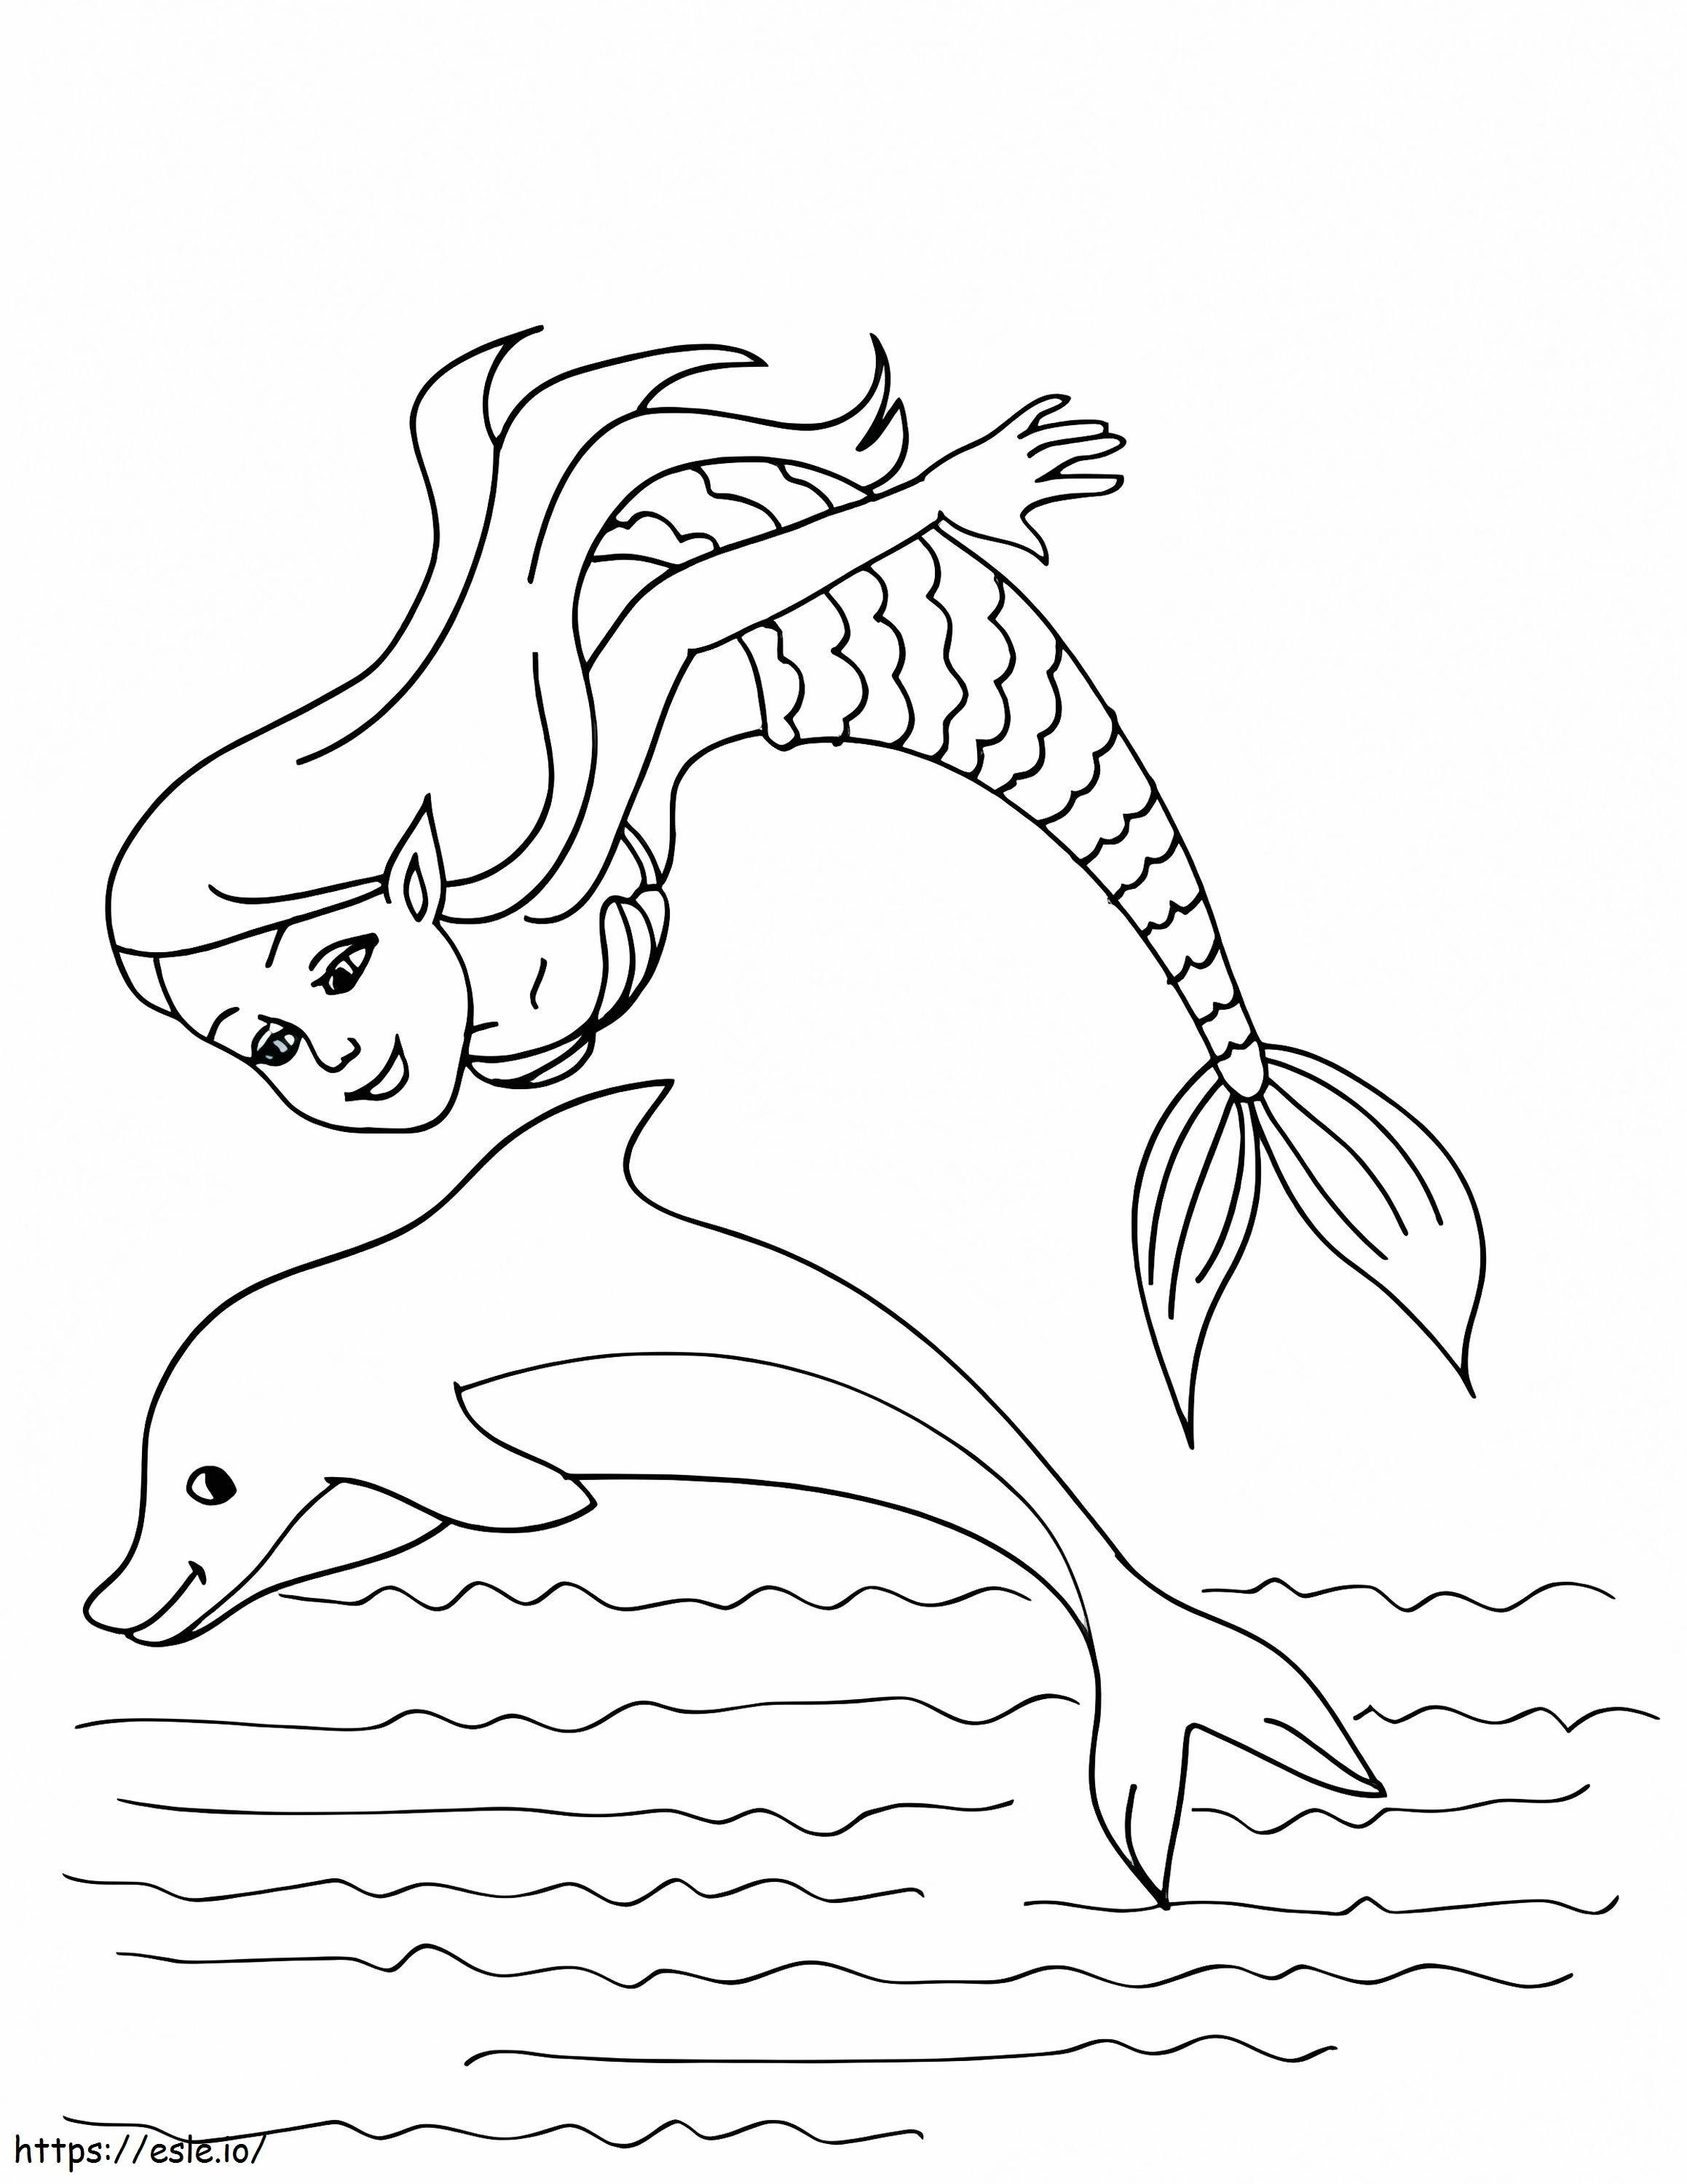 Dolphin Tulostettava Dolphin Tulostettava Tulostettava Dolphin värityskuva